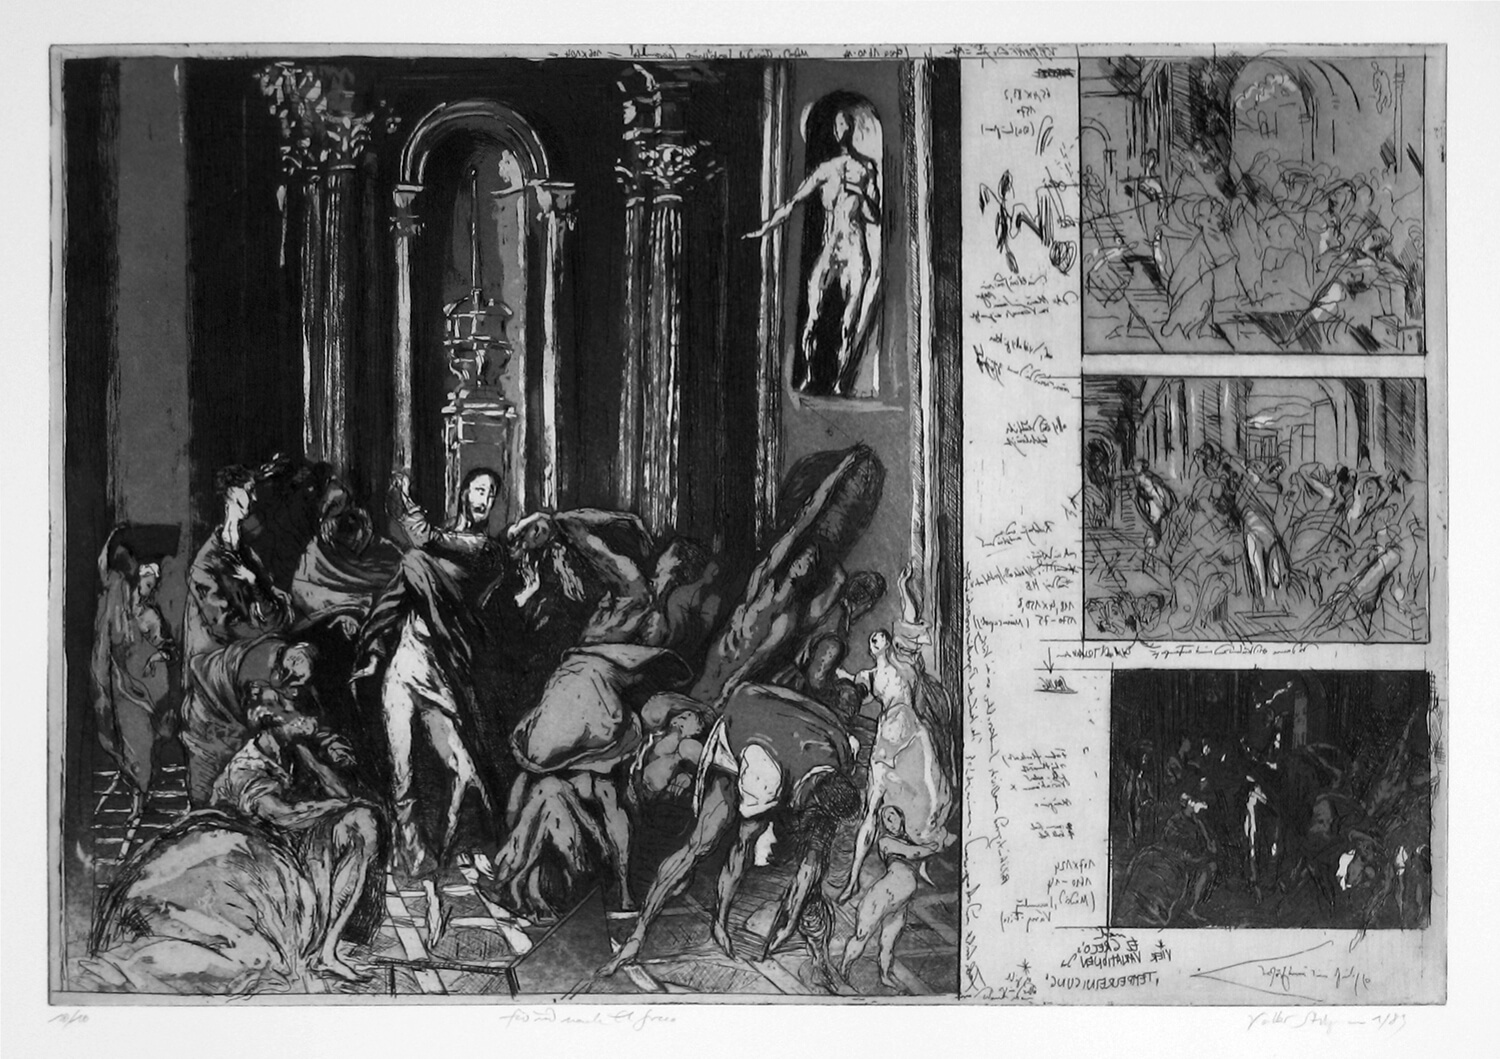 Volker Stelzmann, Für und nach El Greco, 1989, Radierung, Strichätzung, Aquatinta, Auflage: 10, Bild: 40 x 59,5 cm, Blatt: 55,5 x 76 cm